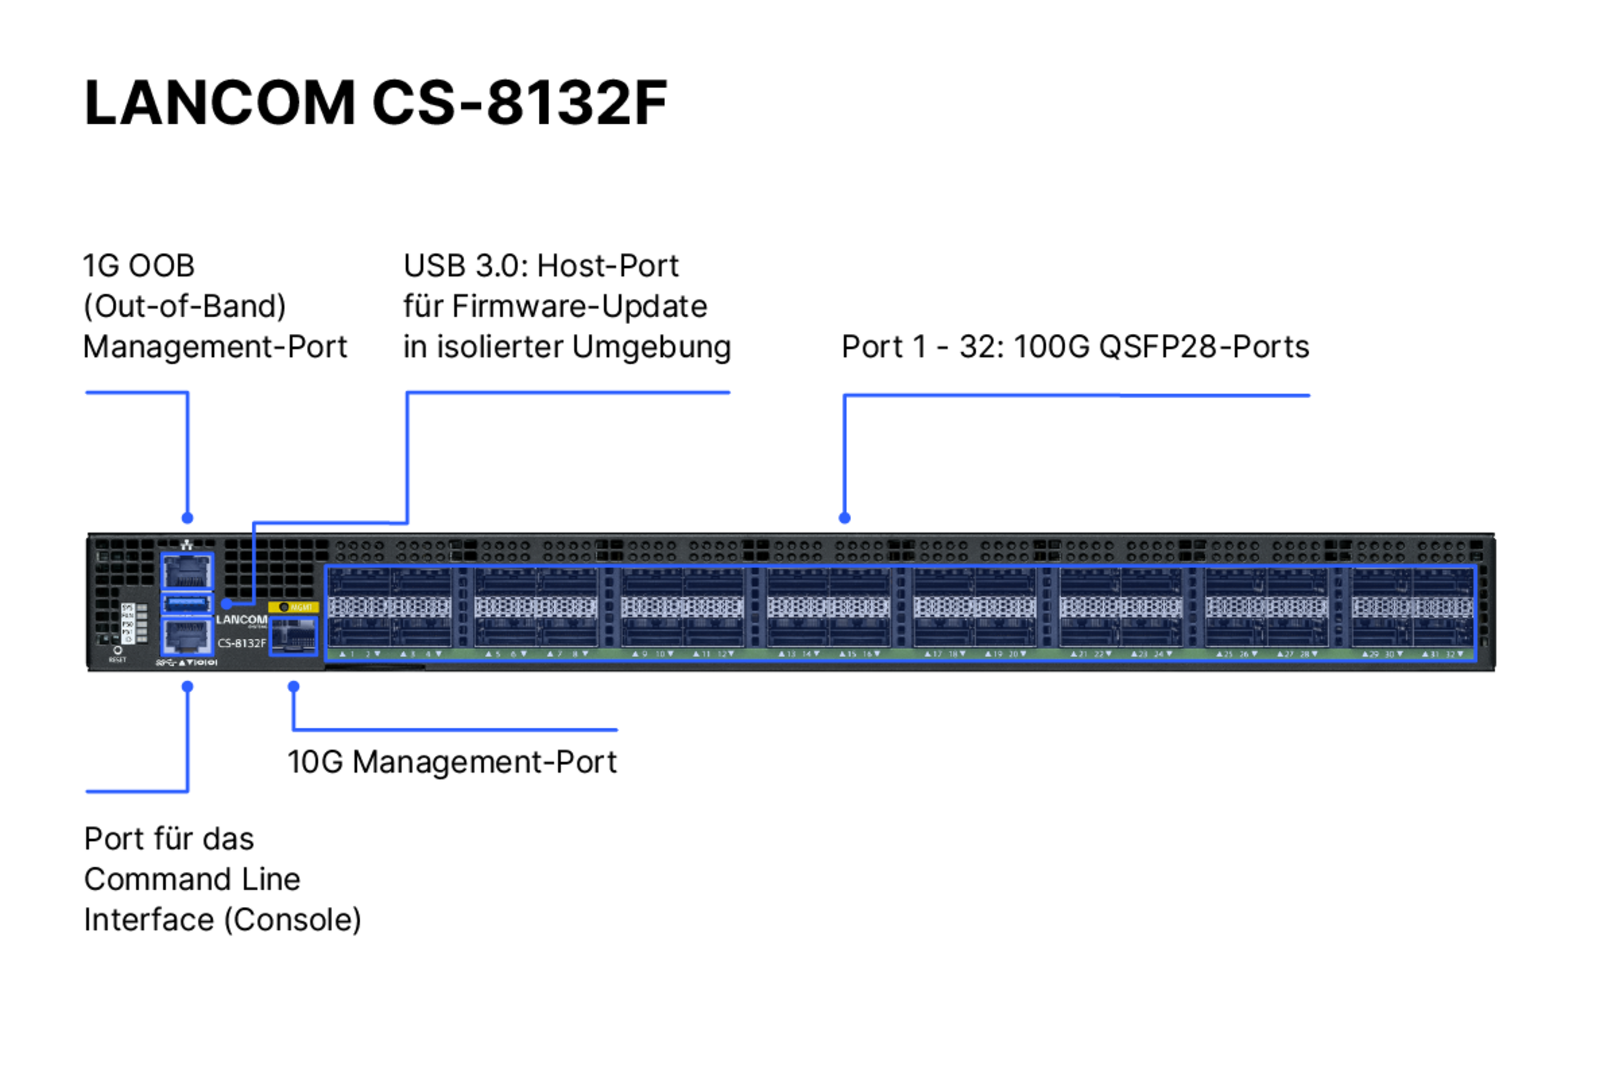 Produktfoto des LANCOM CS-8132F mit Beschriftung der Portkonfigurationen